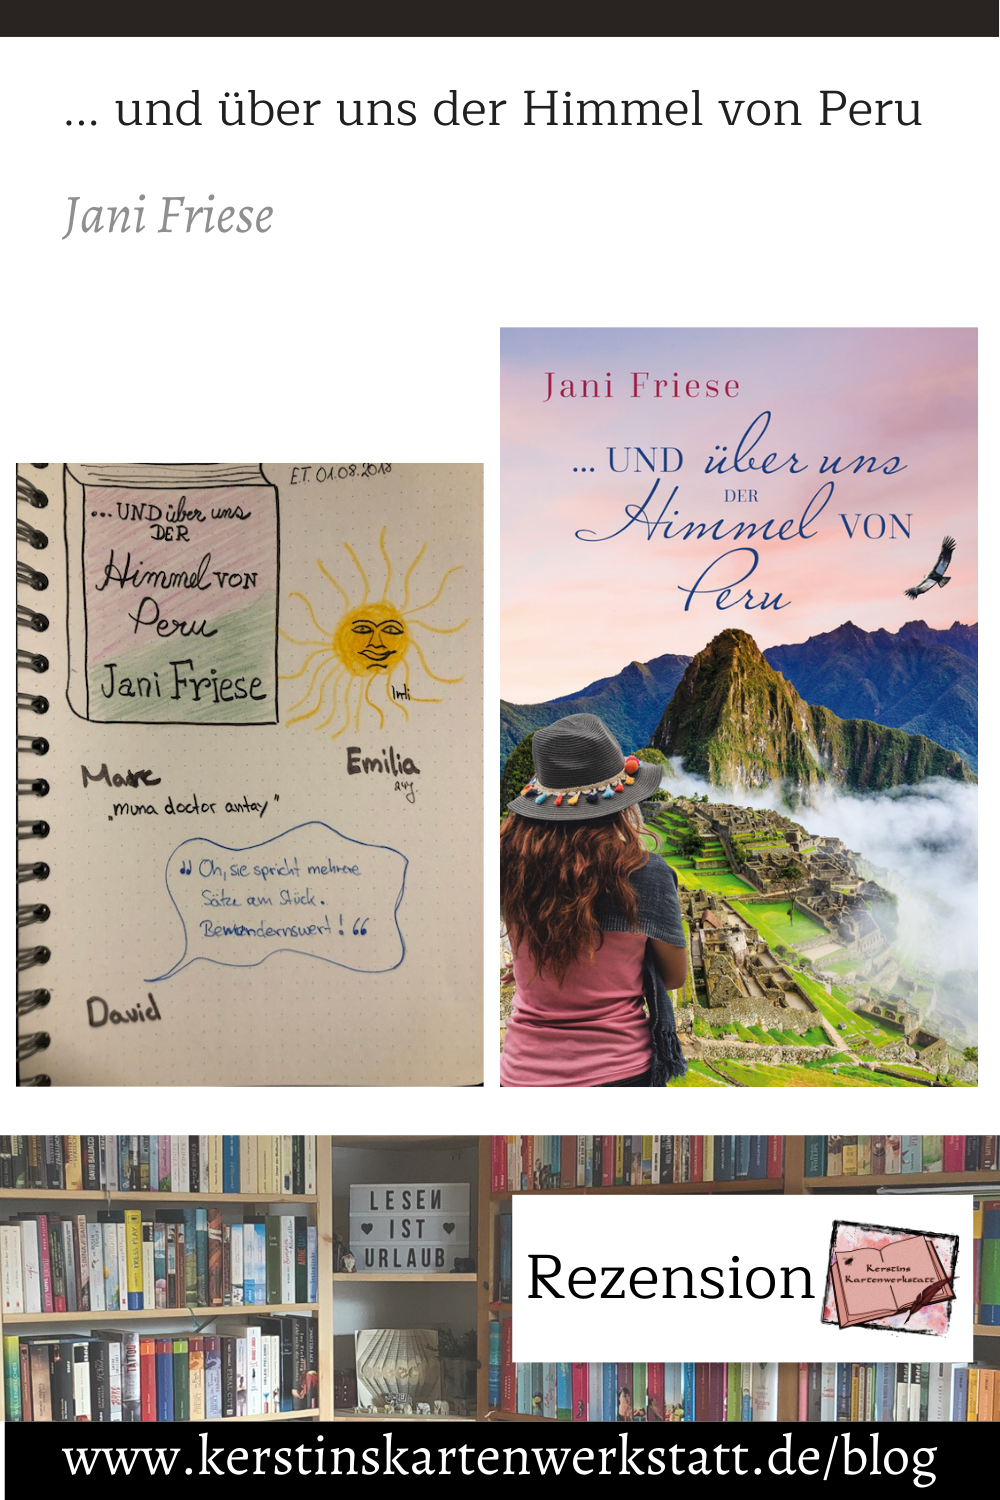 Grafik für Pinterest zur Rezension: und über uns der Himmel von Peru von Jani Friese. Auf der Grafik ist das Buchcover zu sehen mit Blick auf Machu Picchu und Sketchnotes zum Buch unter anderem mit einer gezeichneten Sonne für den Sonnengott Inti.